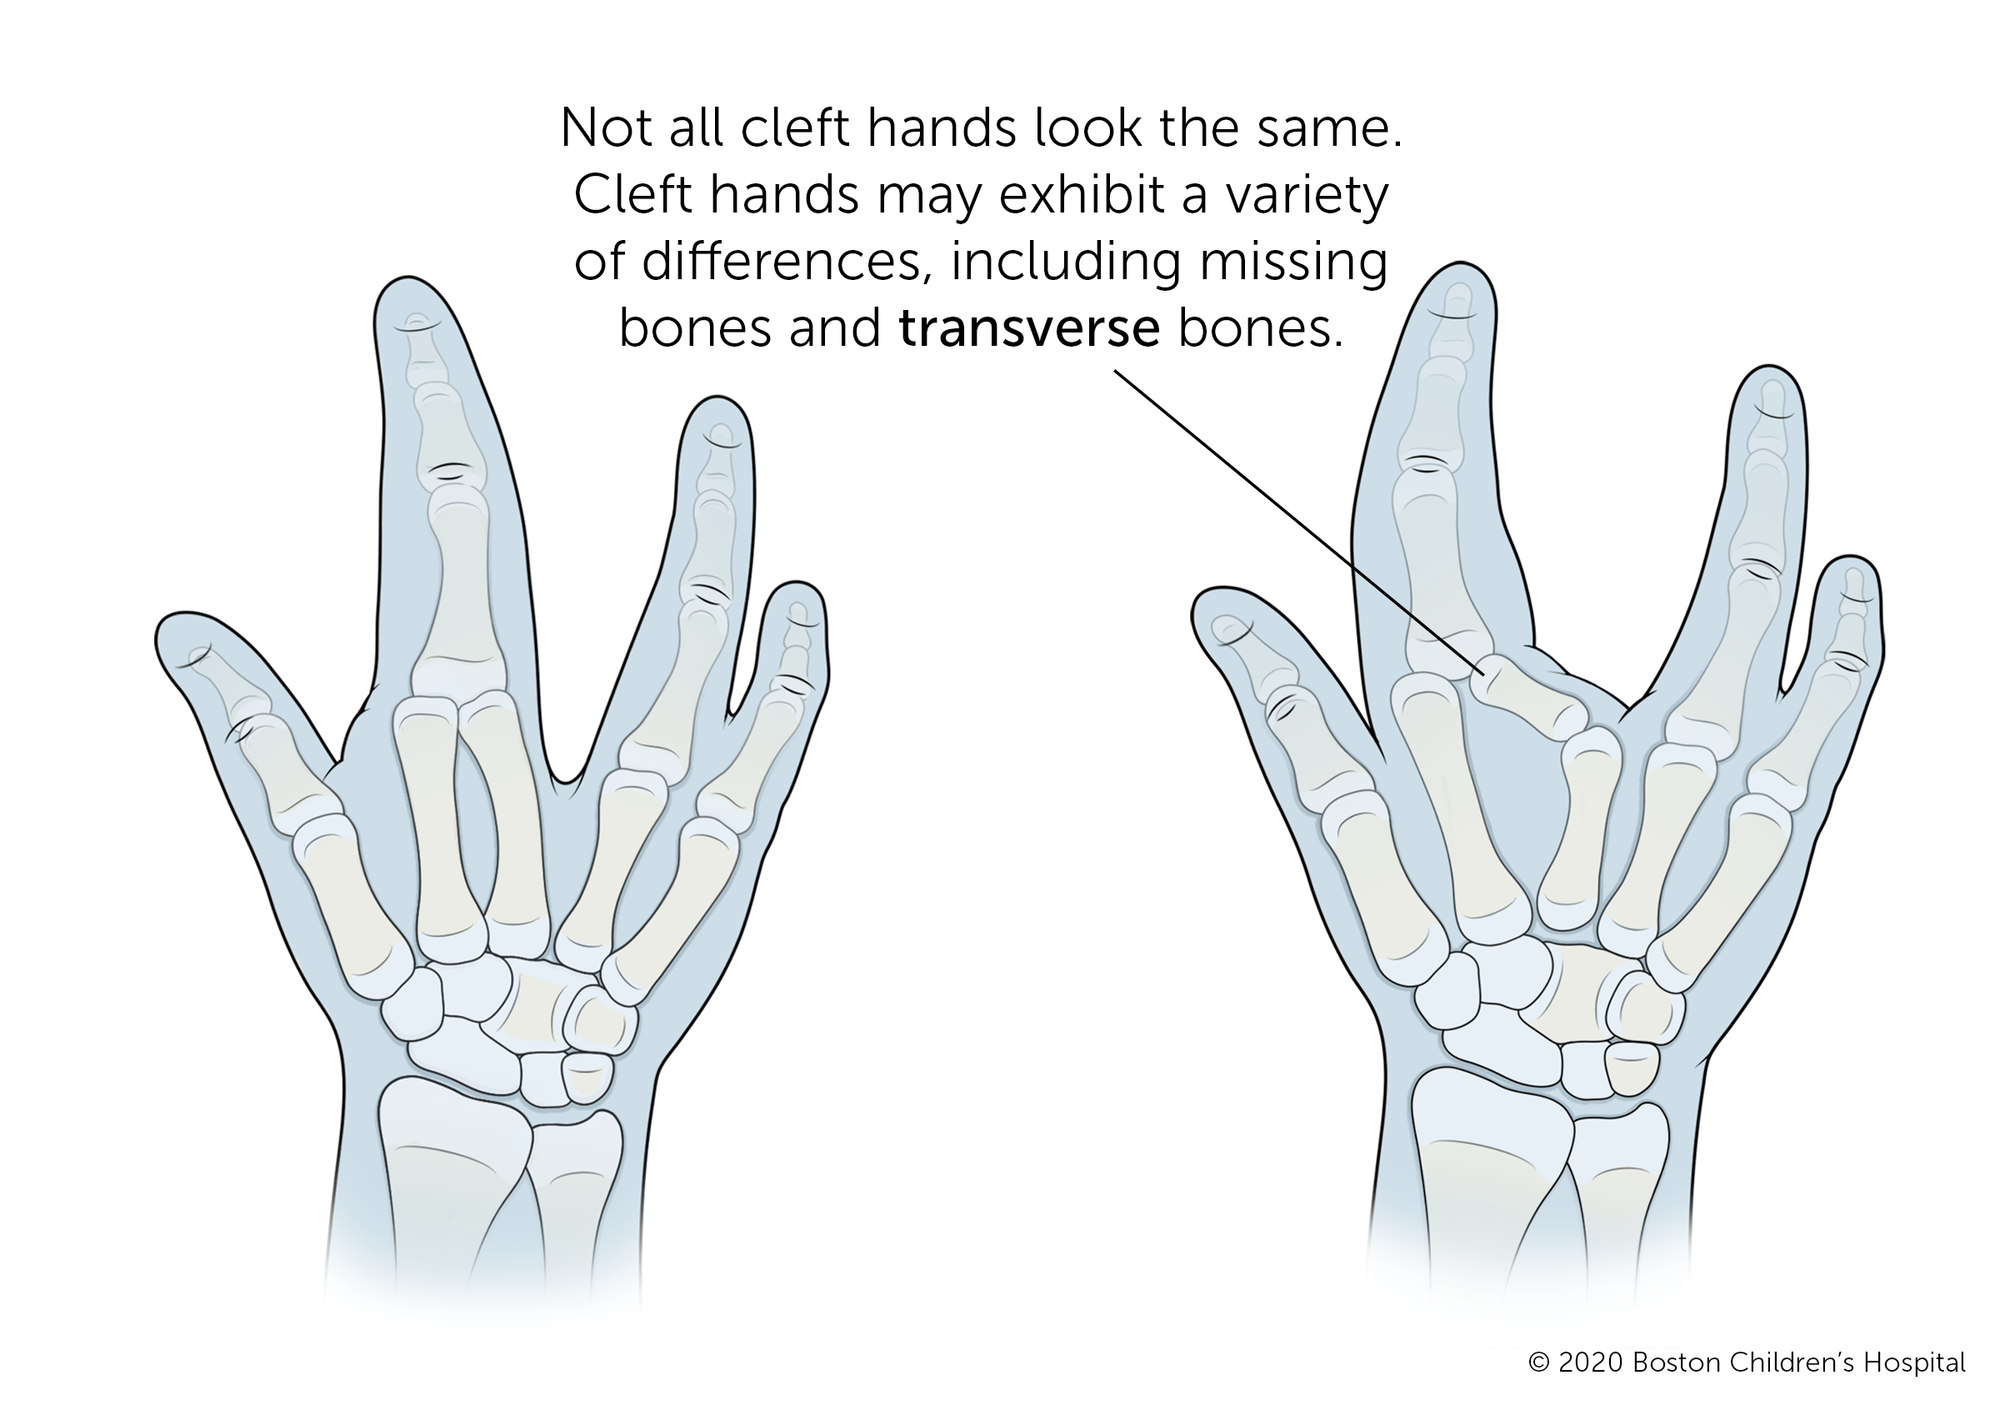 通常,裂手丢失了一个手指或手指中间的手,有一个明显的v型间隙空间。但不是所有裂手看起来一样。裂的手可能会出现各种各样的差异如失踪的骨头和横向的骨头。在某些情况下,裂缝发生拇指一侧或小指一侧的手。